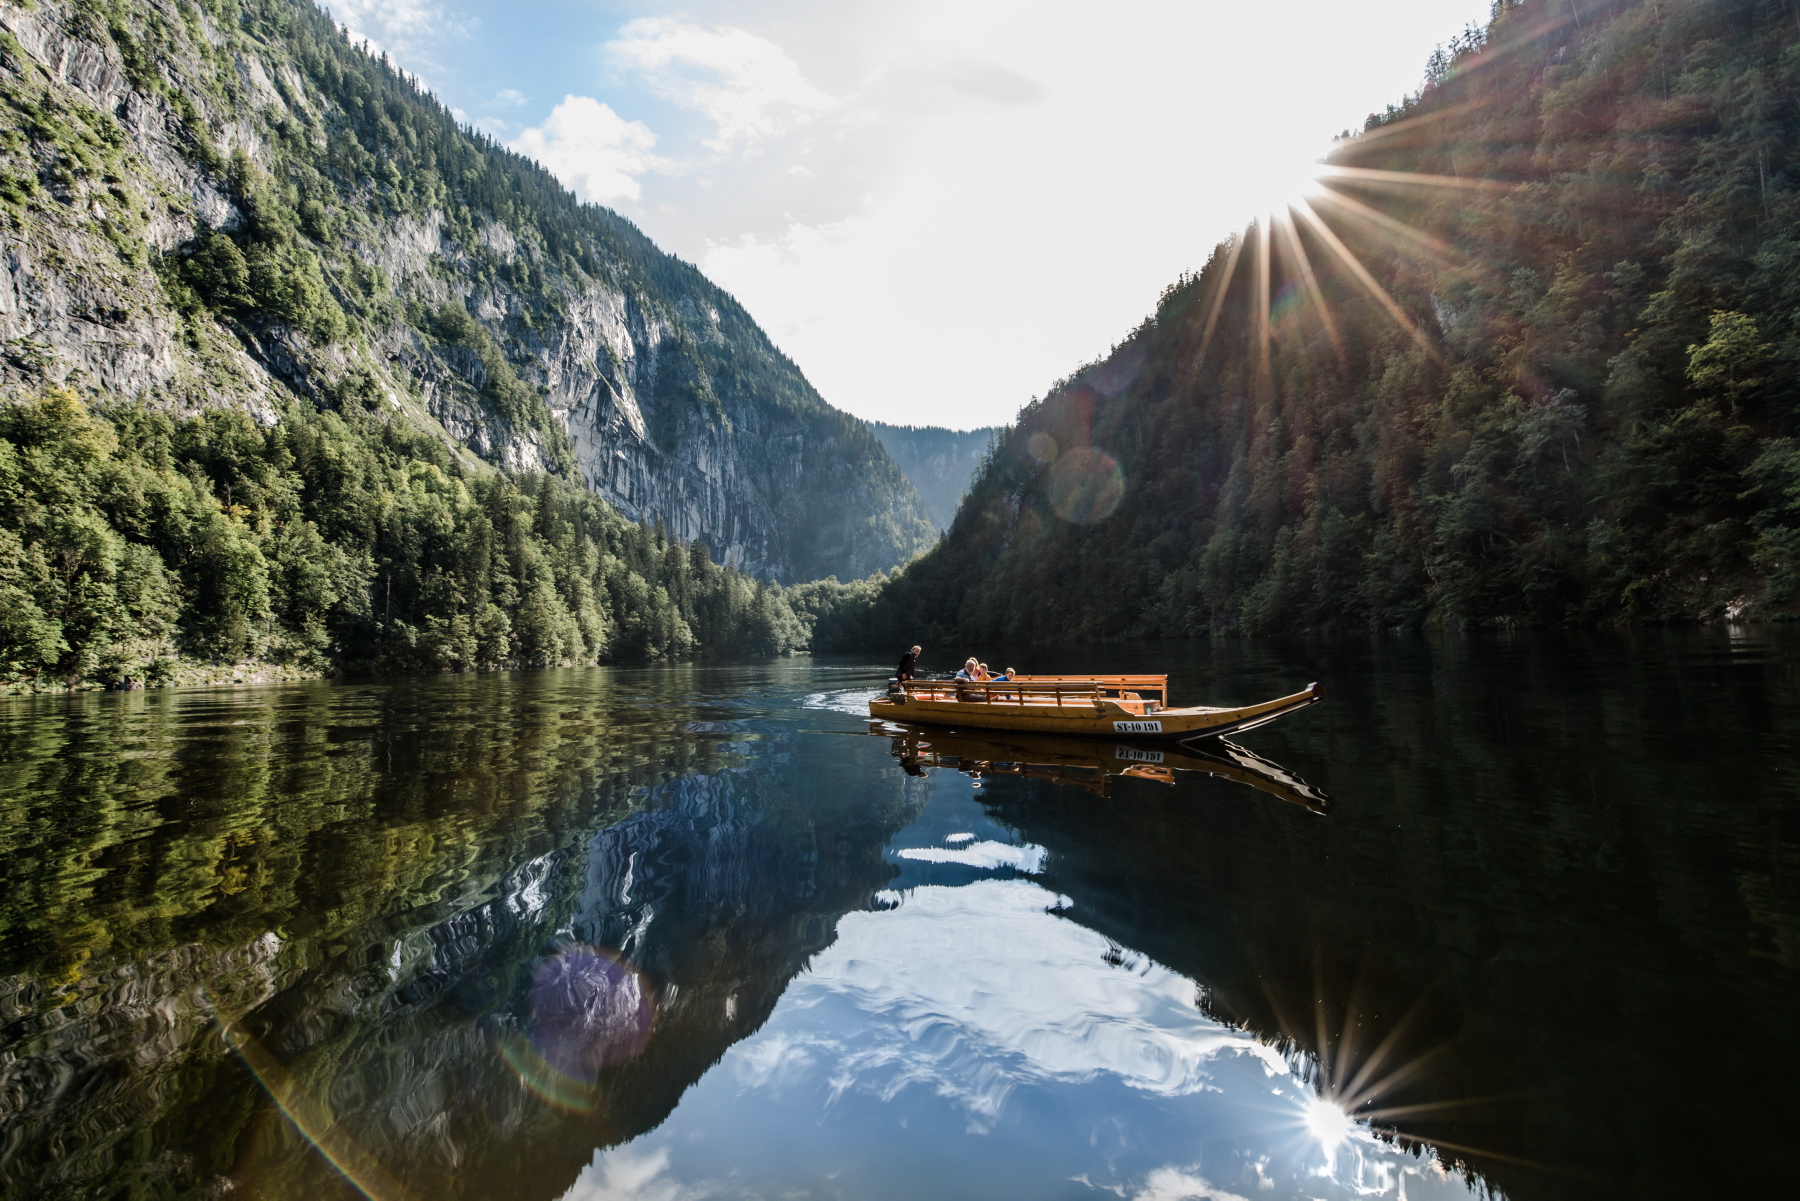 PO JEZIORZE Toplitzsee popływać można łodzią lub solarnym katamaranem